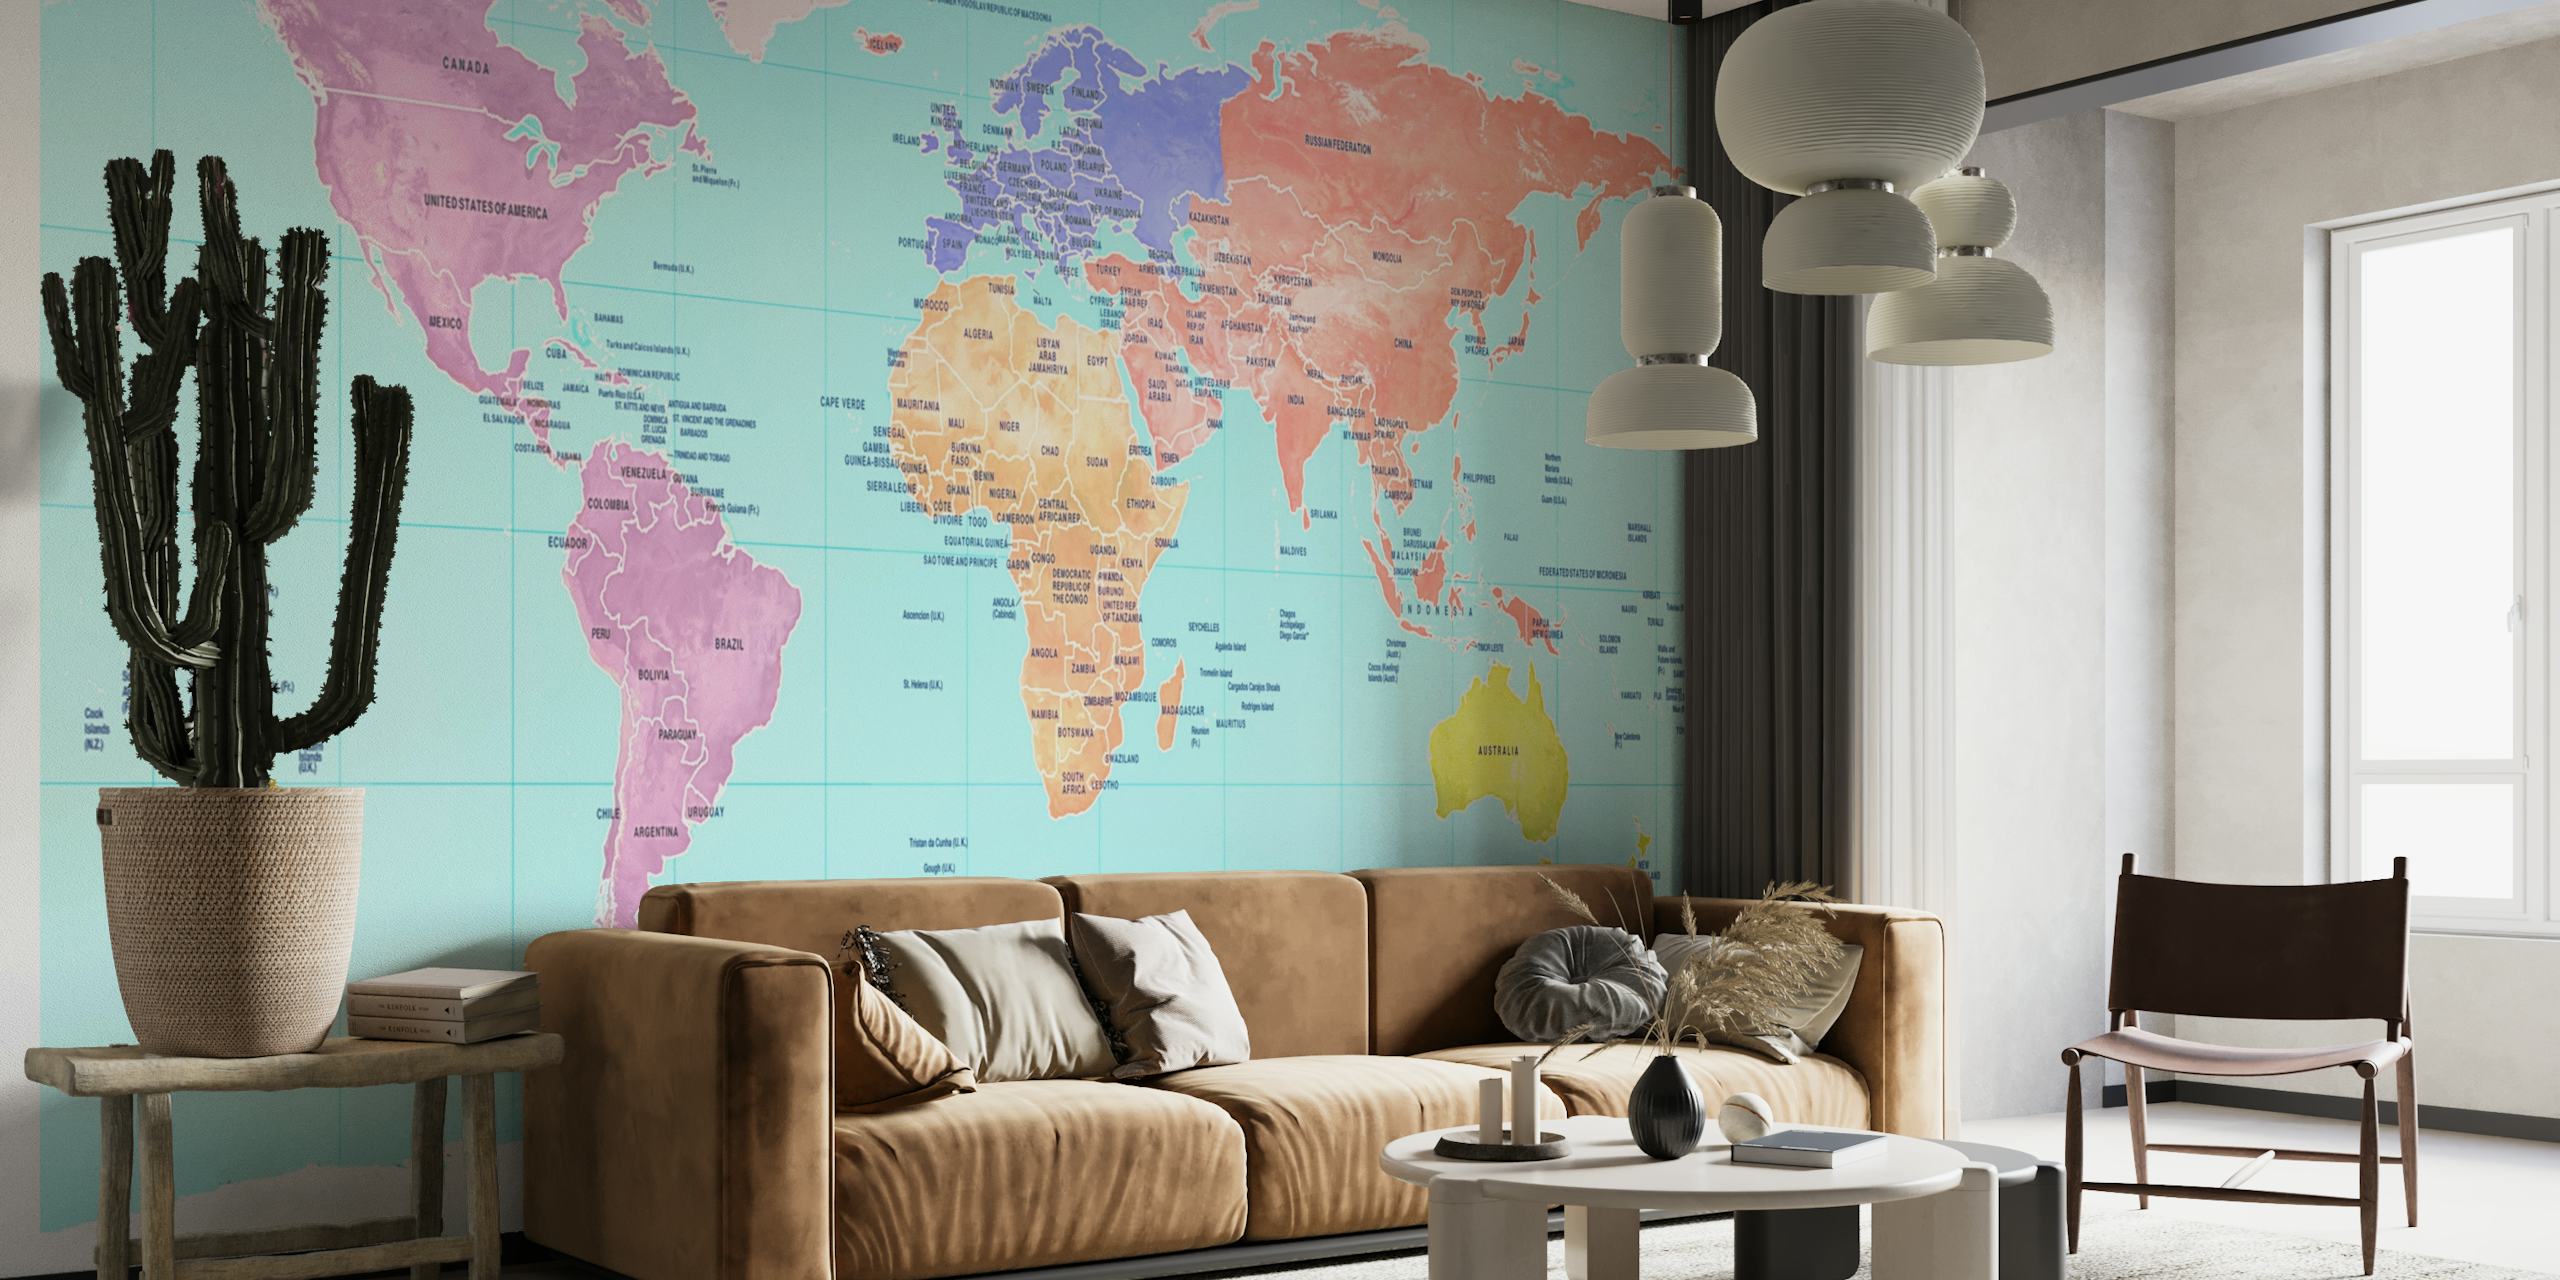 Farbenfrohe Weltkarten-Wandmalerei mit Kontinenten in verschiedenen Farbtönen